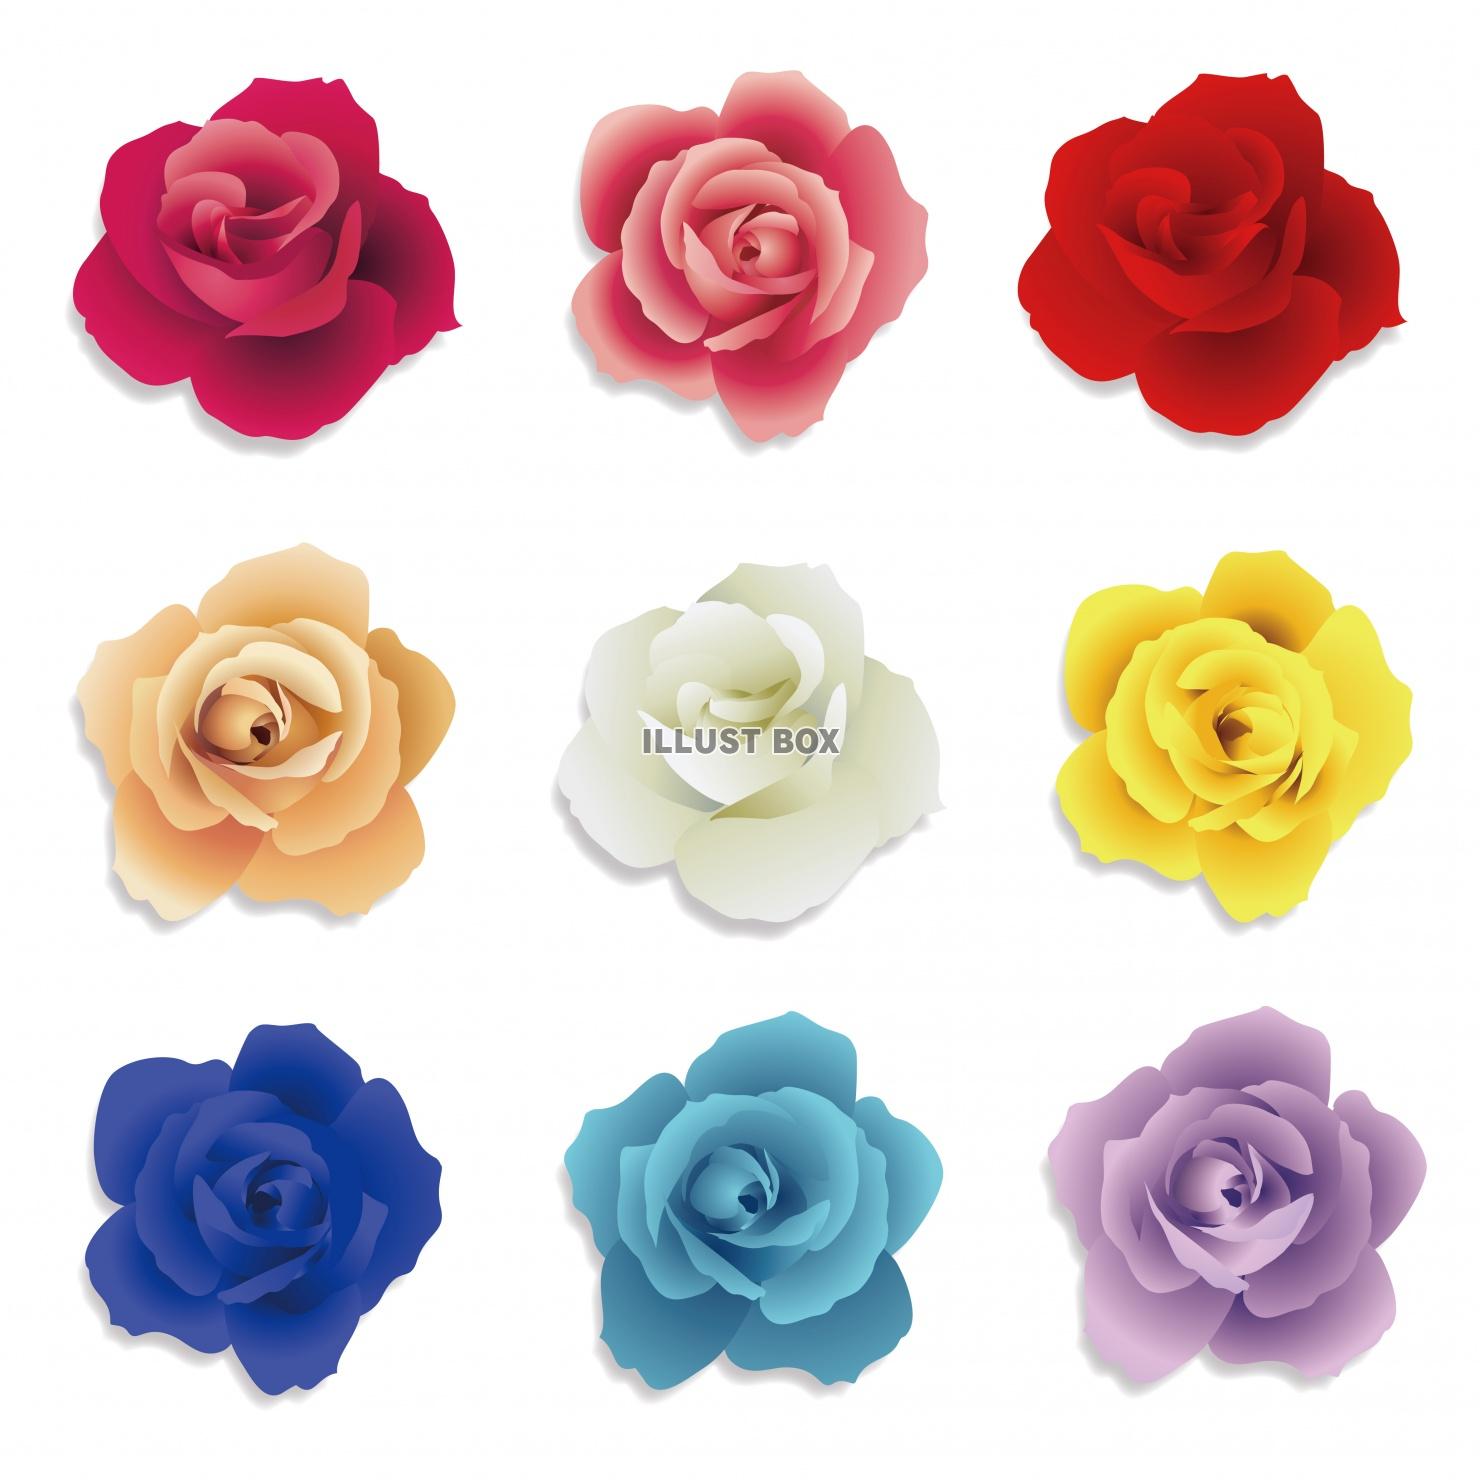 無料イラスト 色とりどりのバラの花素材セット